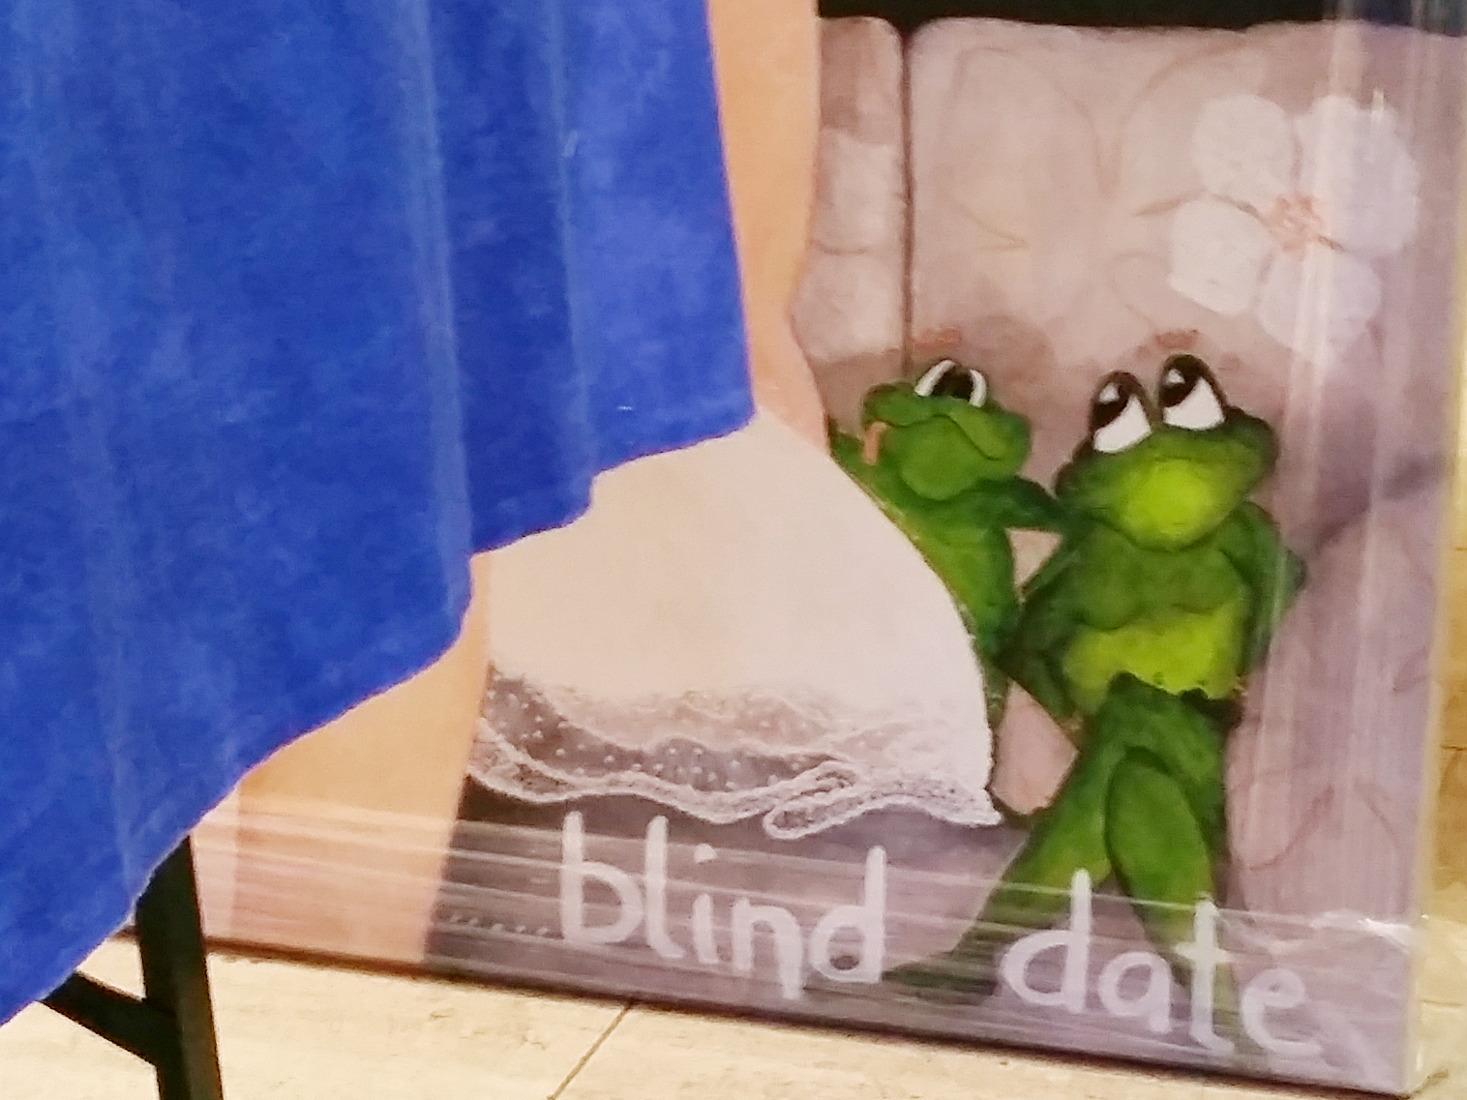 Blind dating essen